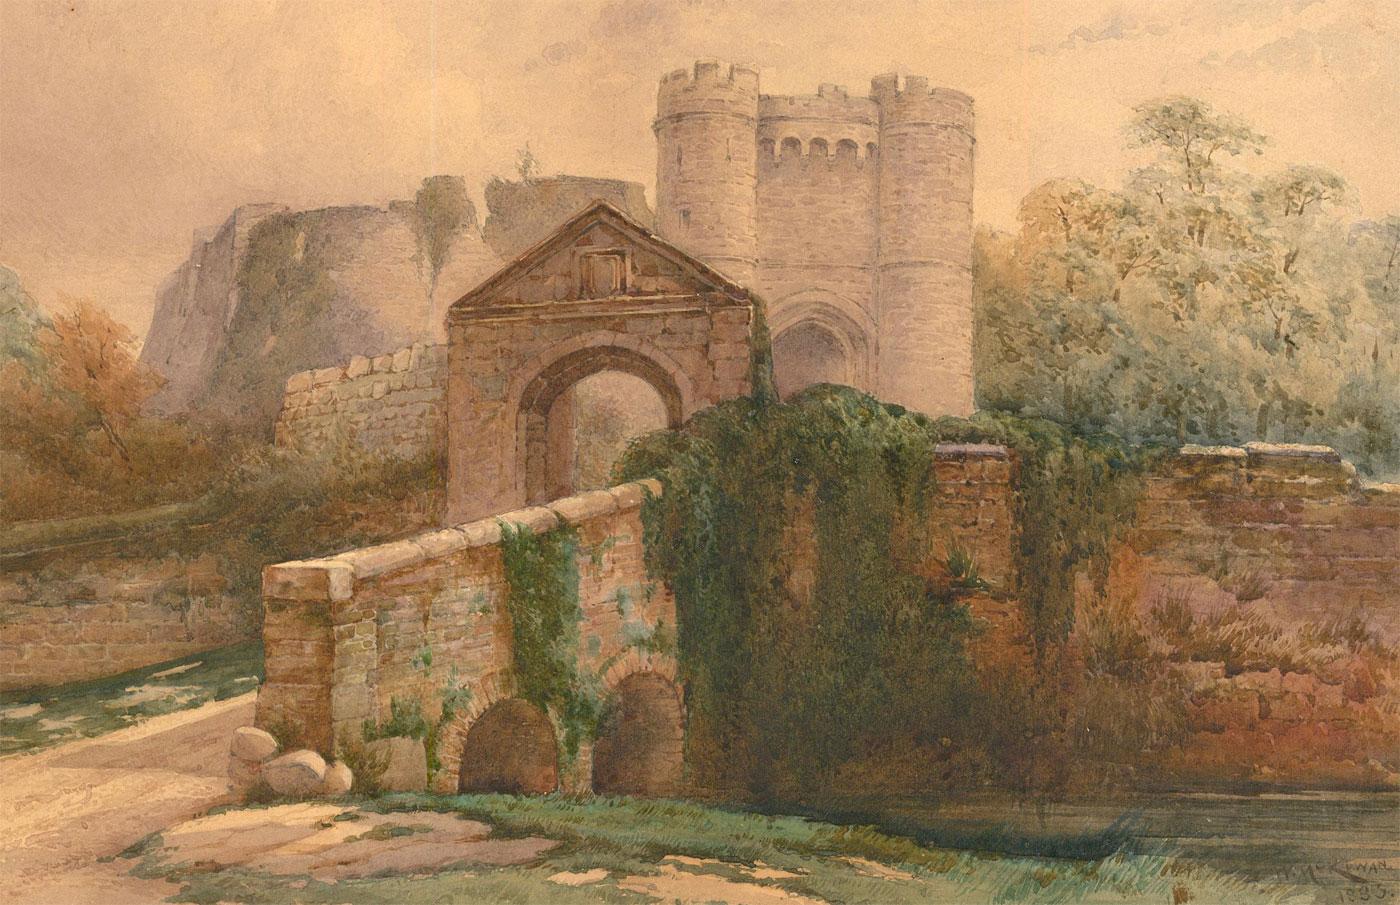 Unknown Landscape Art - W. McKewan - 1833 Watercolour, Motte-and-Bailey Castle